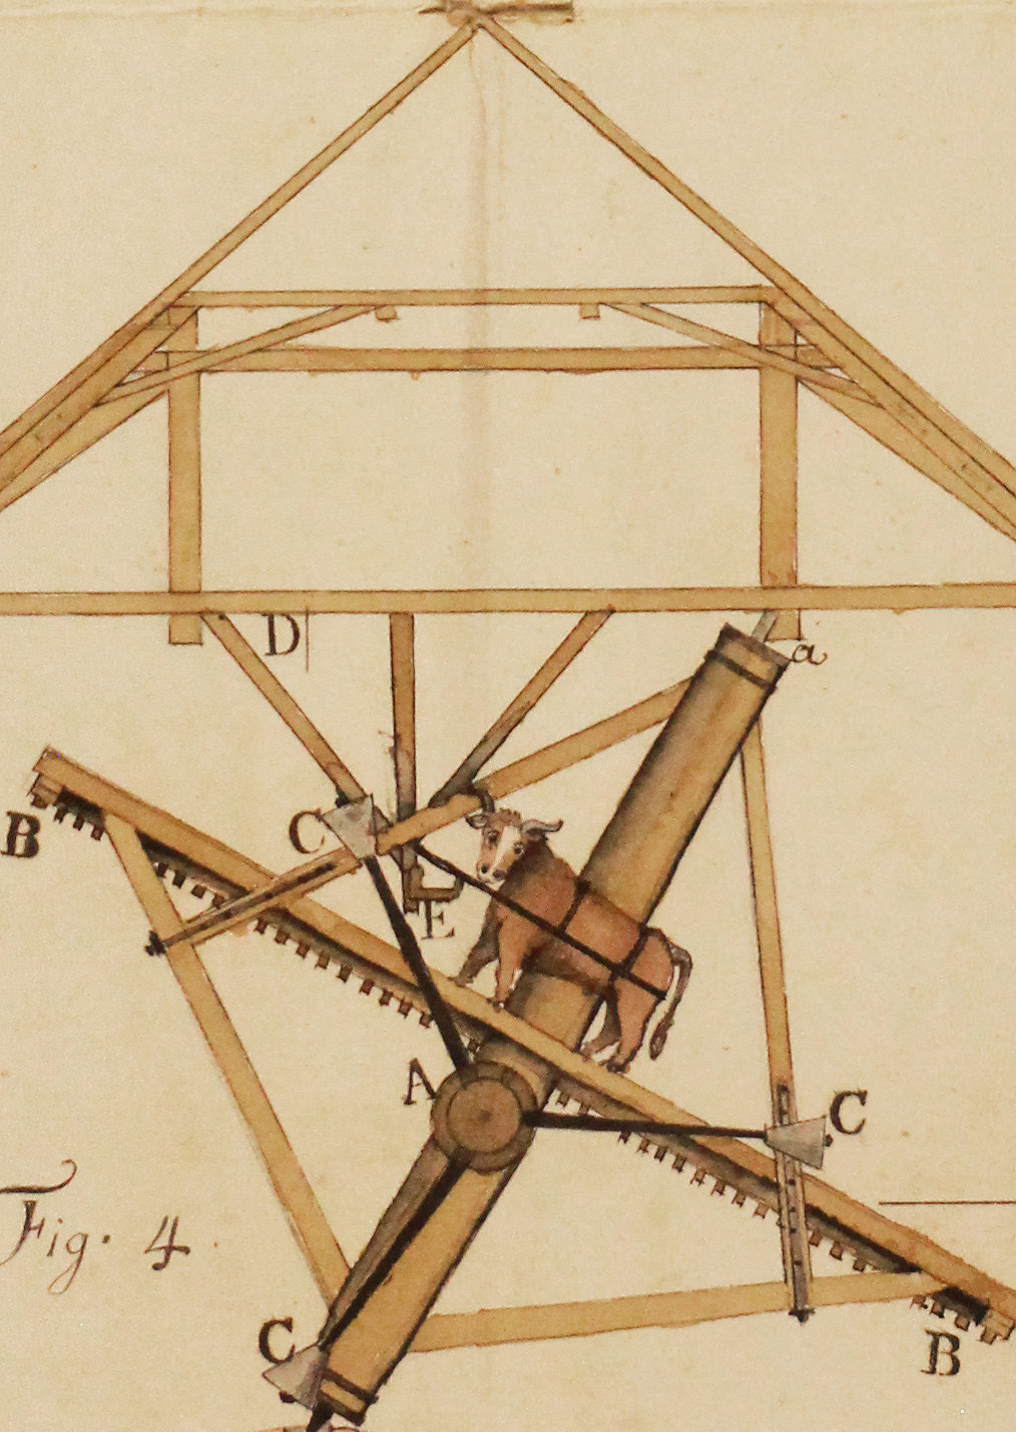 Concours sur le perfectionnement des moulins : dessin manuscrit couleur (1763, Ms 174, coll. Académie SBLA de Lyon)